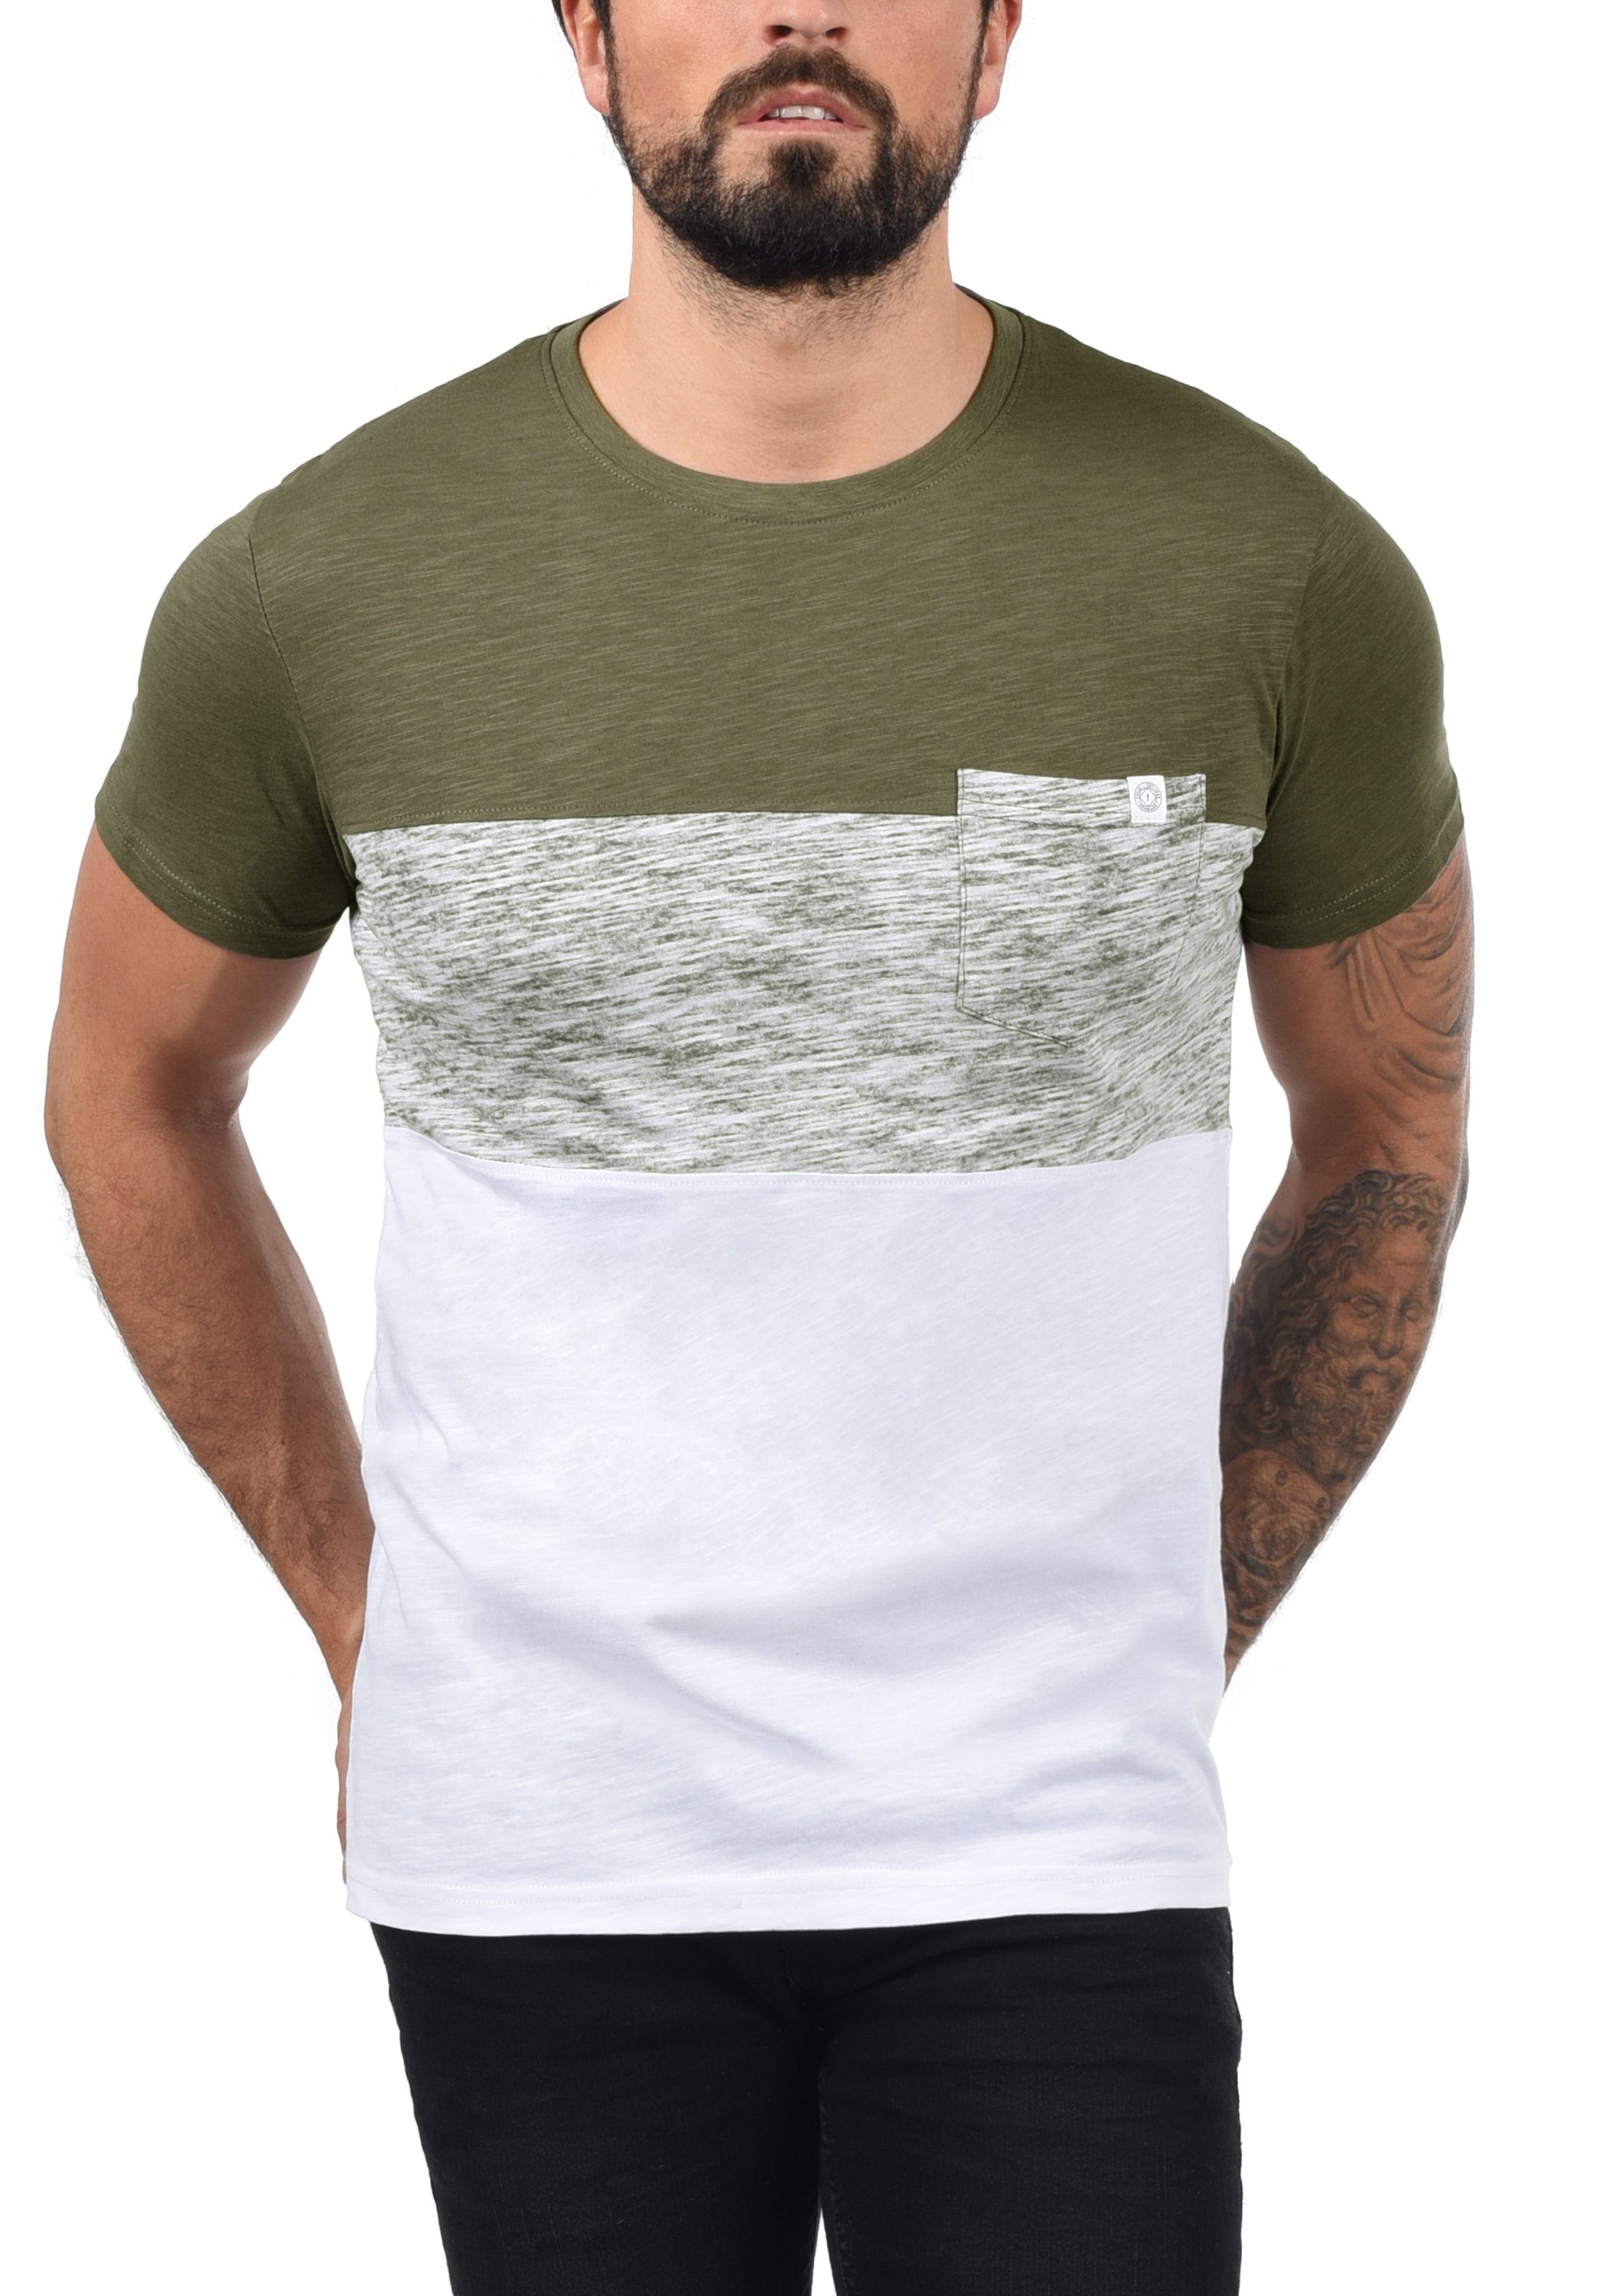 Rundhalsshirt !Solid Green T-Shirt (3797) mit Color Ivy Block SDSinor